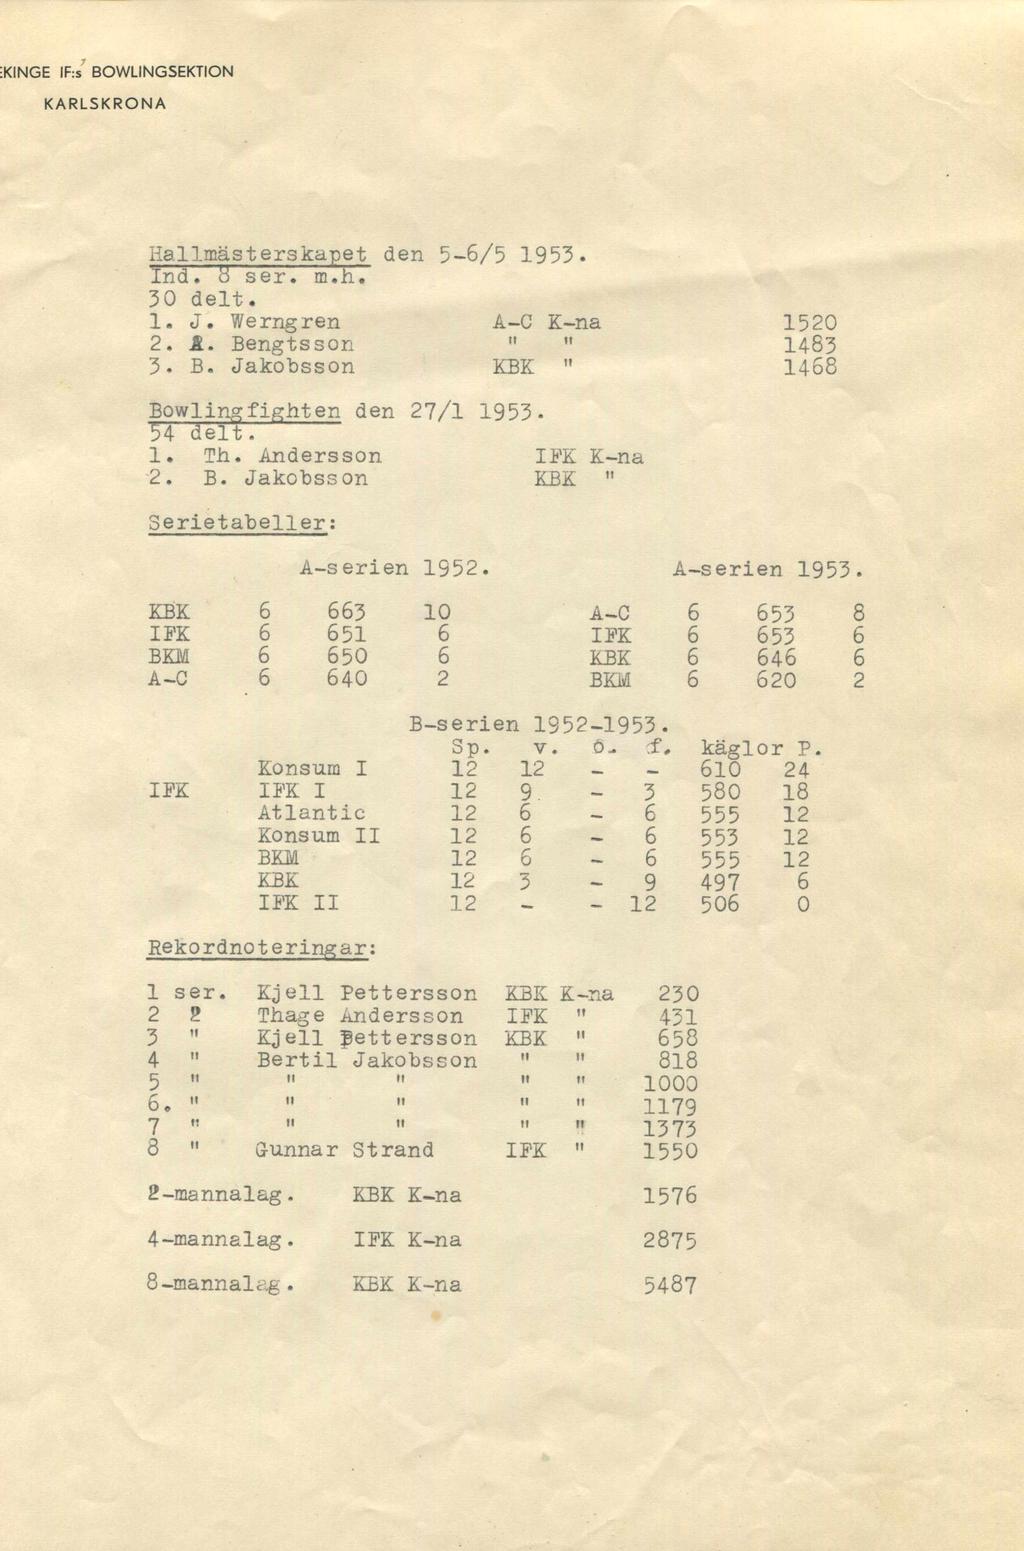 KINGE IF:s BOWLINGSEKTION Hallmästerskapet den 5-6/5 1953. Ind. B ser. m.h. 30 delt. 1. J. Werngren A-C K-na 2. &. Bengtsson " " 3. B. Jakobsson KBK " 1520 1483 1468 Bowlingfighten den 27/1 1953-54 delt.